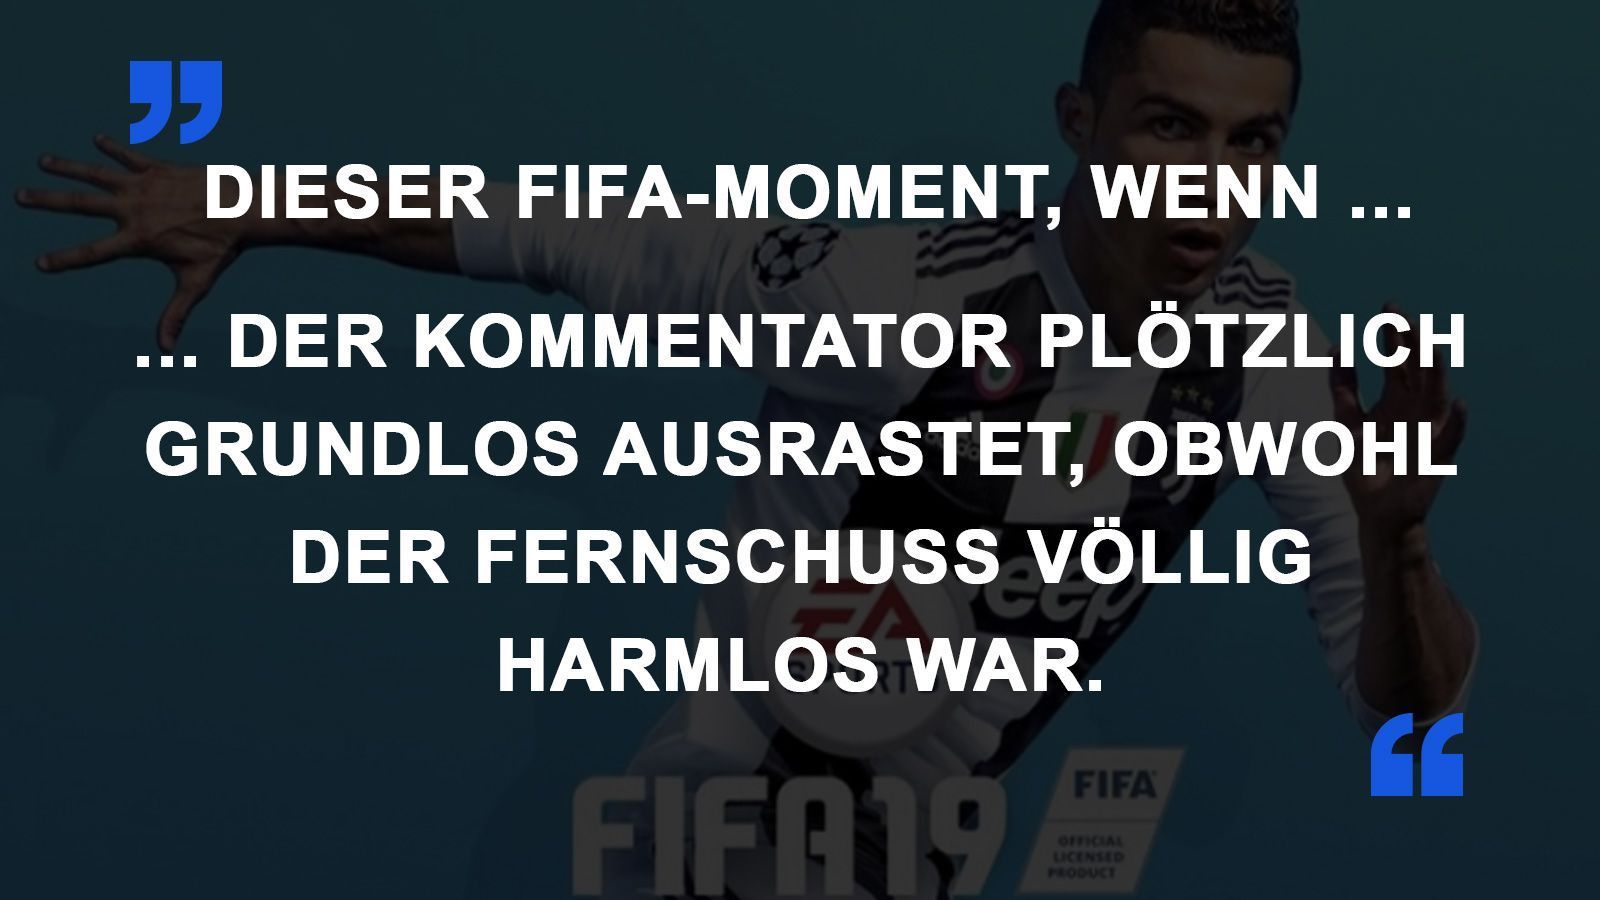 
                <strong>FIFA Momente Fernschuss</strong><br>
                
              